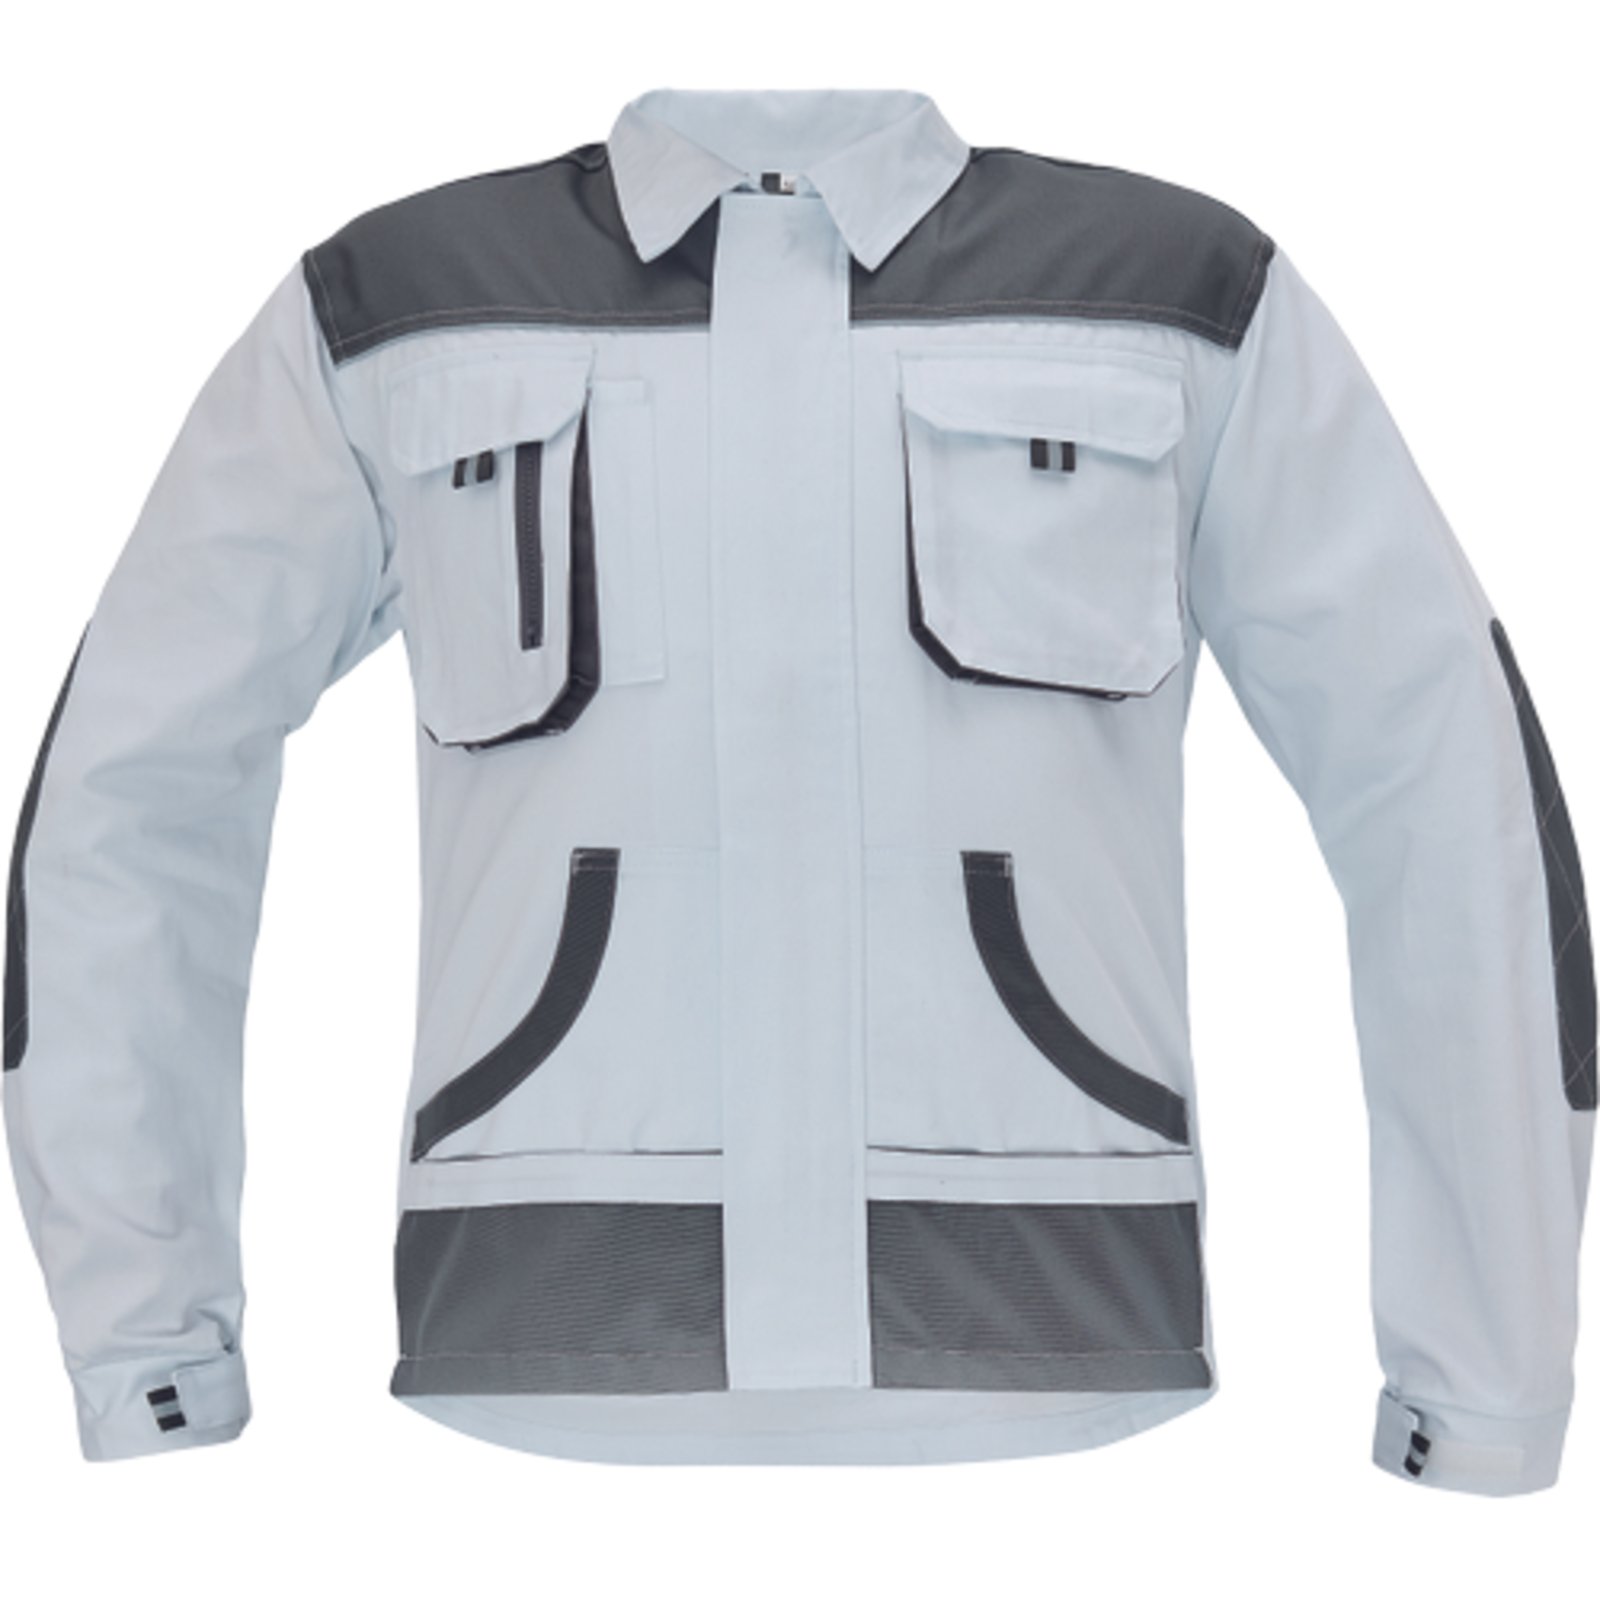 Odolná pracovná bunda Cerva FF Hans - veľkosť: 50, farba: biela/sivá